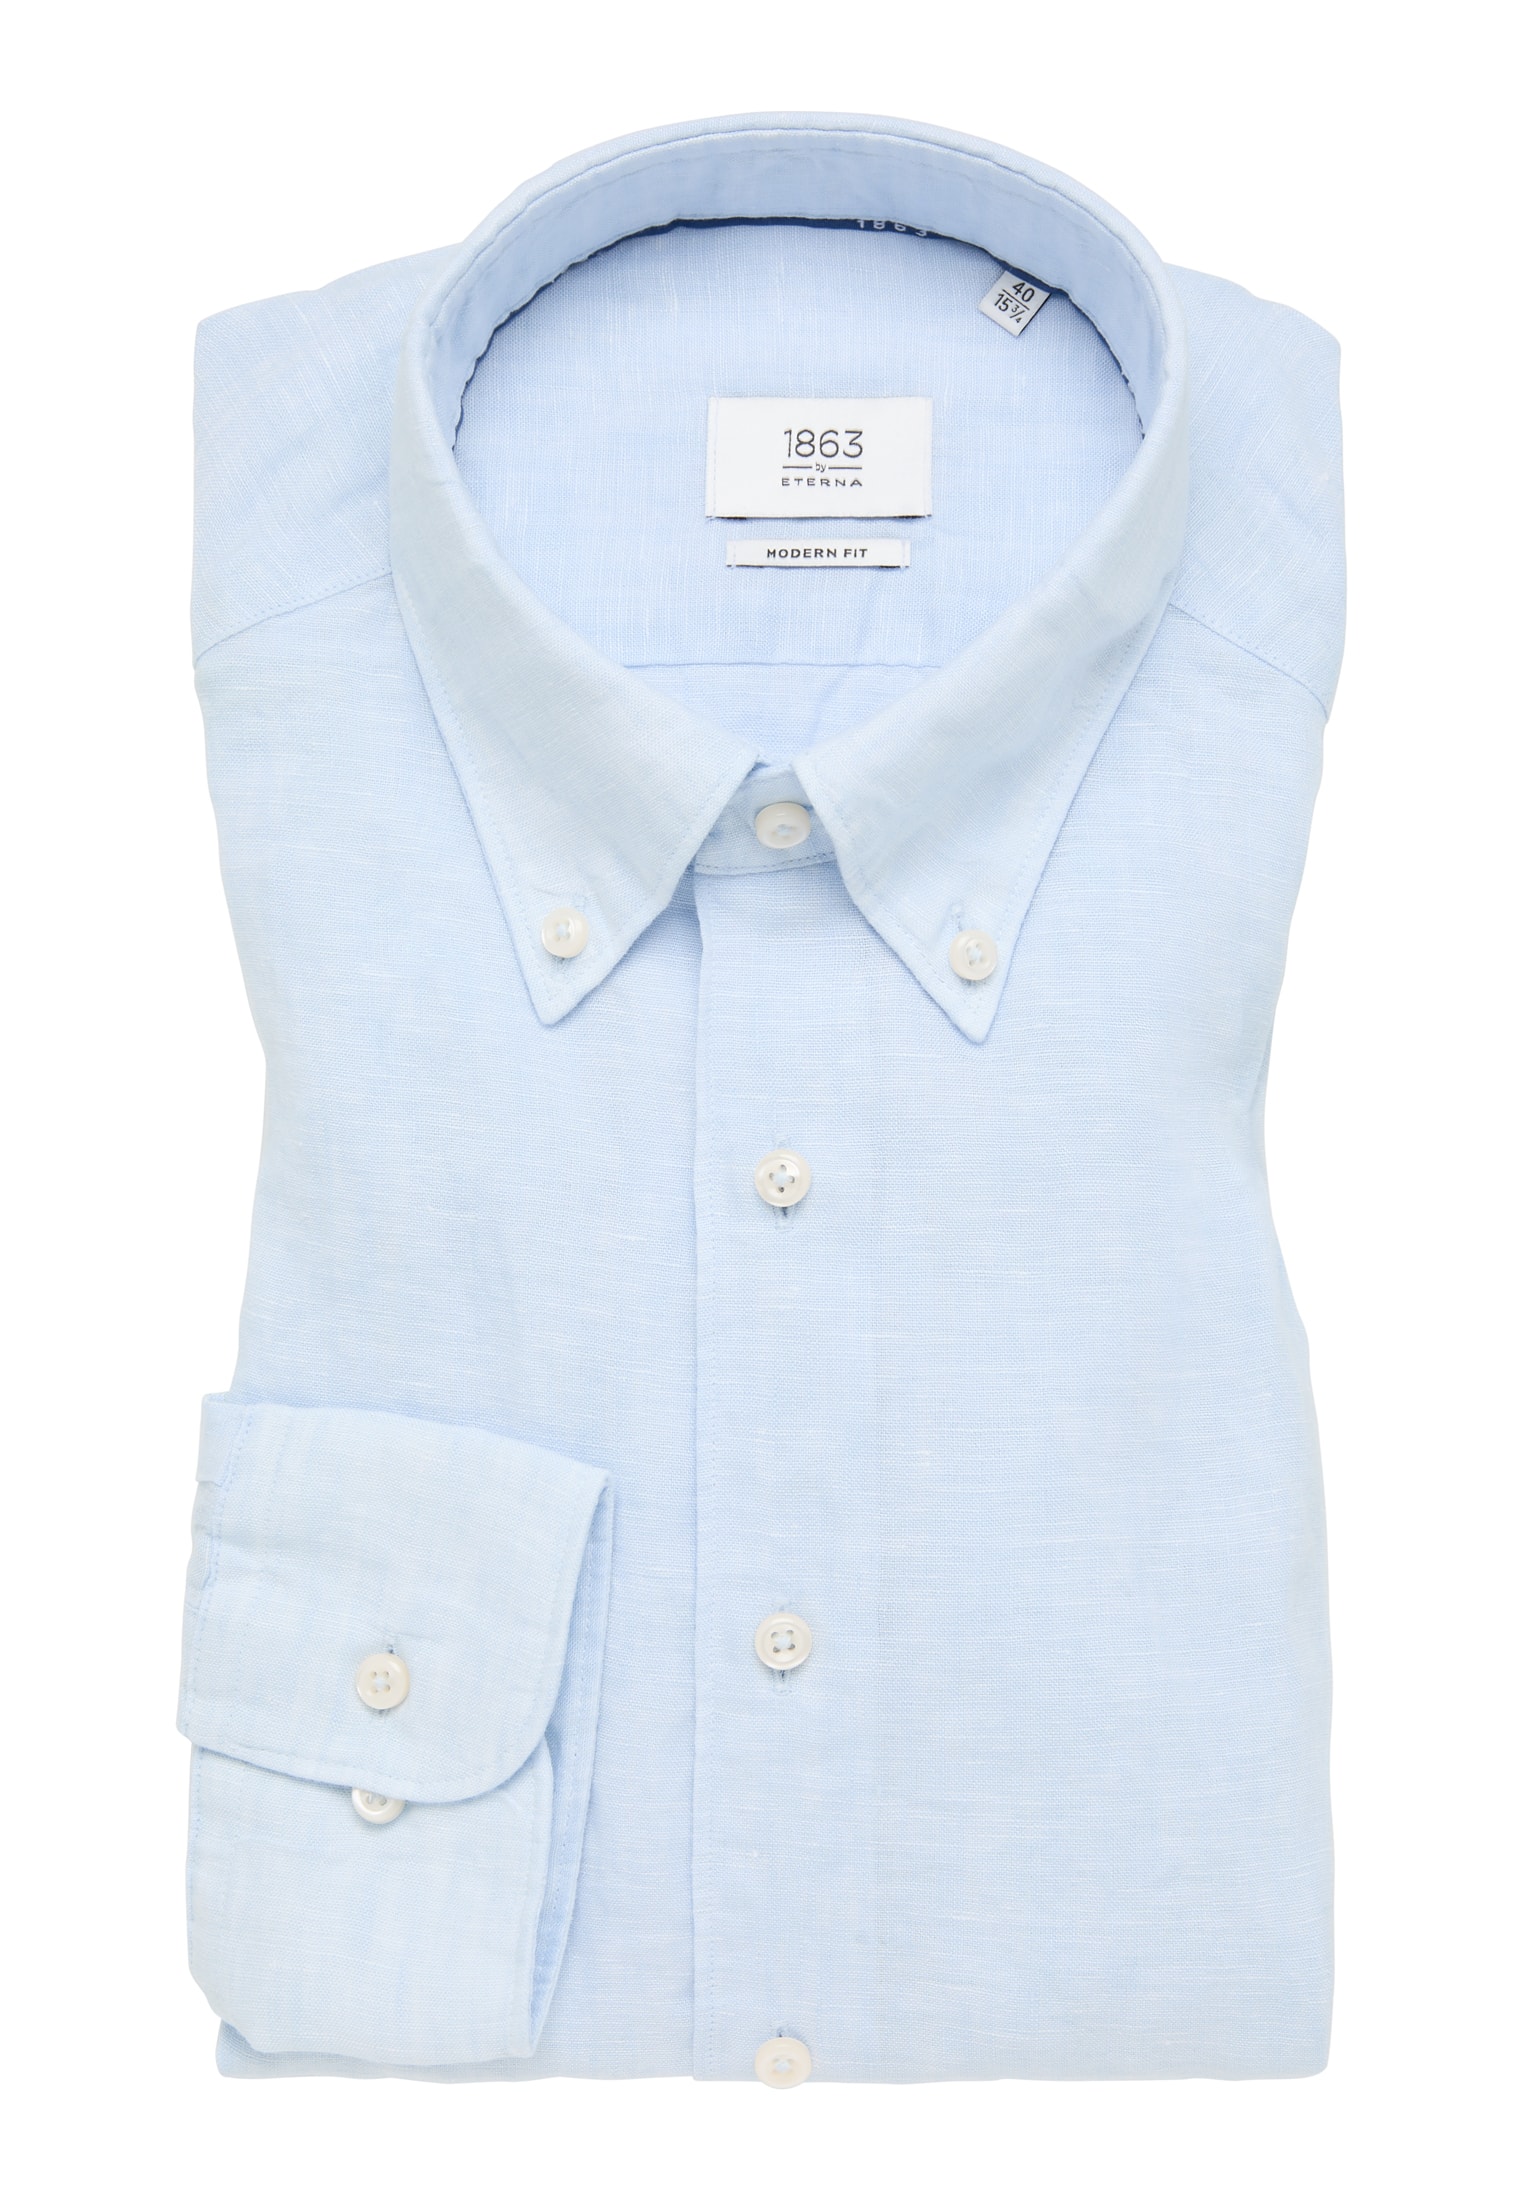 MODERN FIT Shirt in blue long 44 | | | 1SH11902-01-11-44-1/1 light sleeve plain blue | light